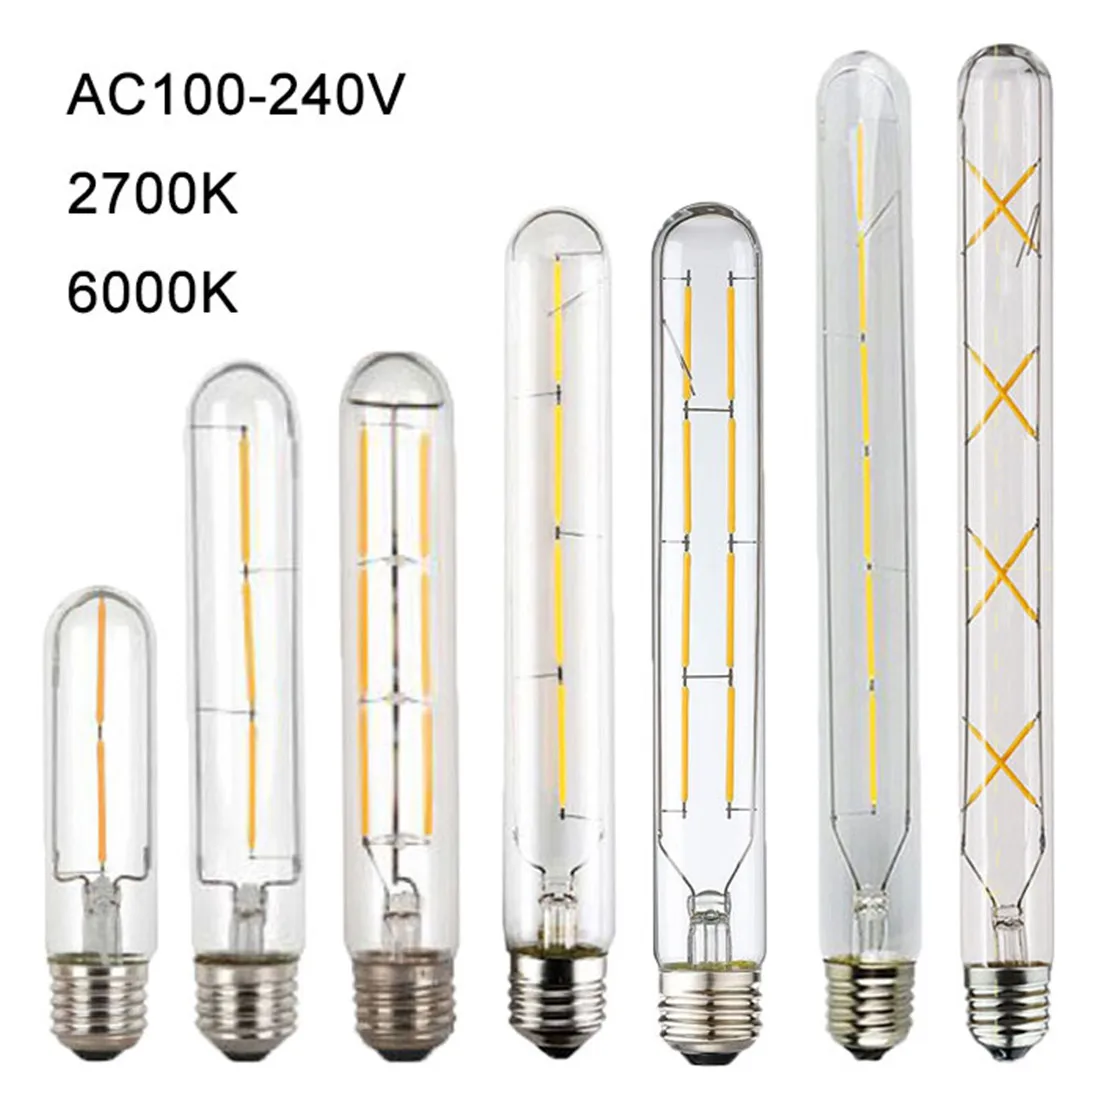 

100-240V 6000K LED Filament Light Bulb 110V 120V 6500K Tubular Edison Bulbs T10 T185 T225 T30 T300 Long Tube 4W 6W 8W led Bulb